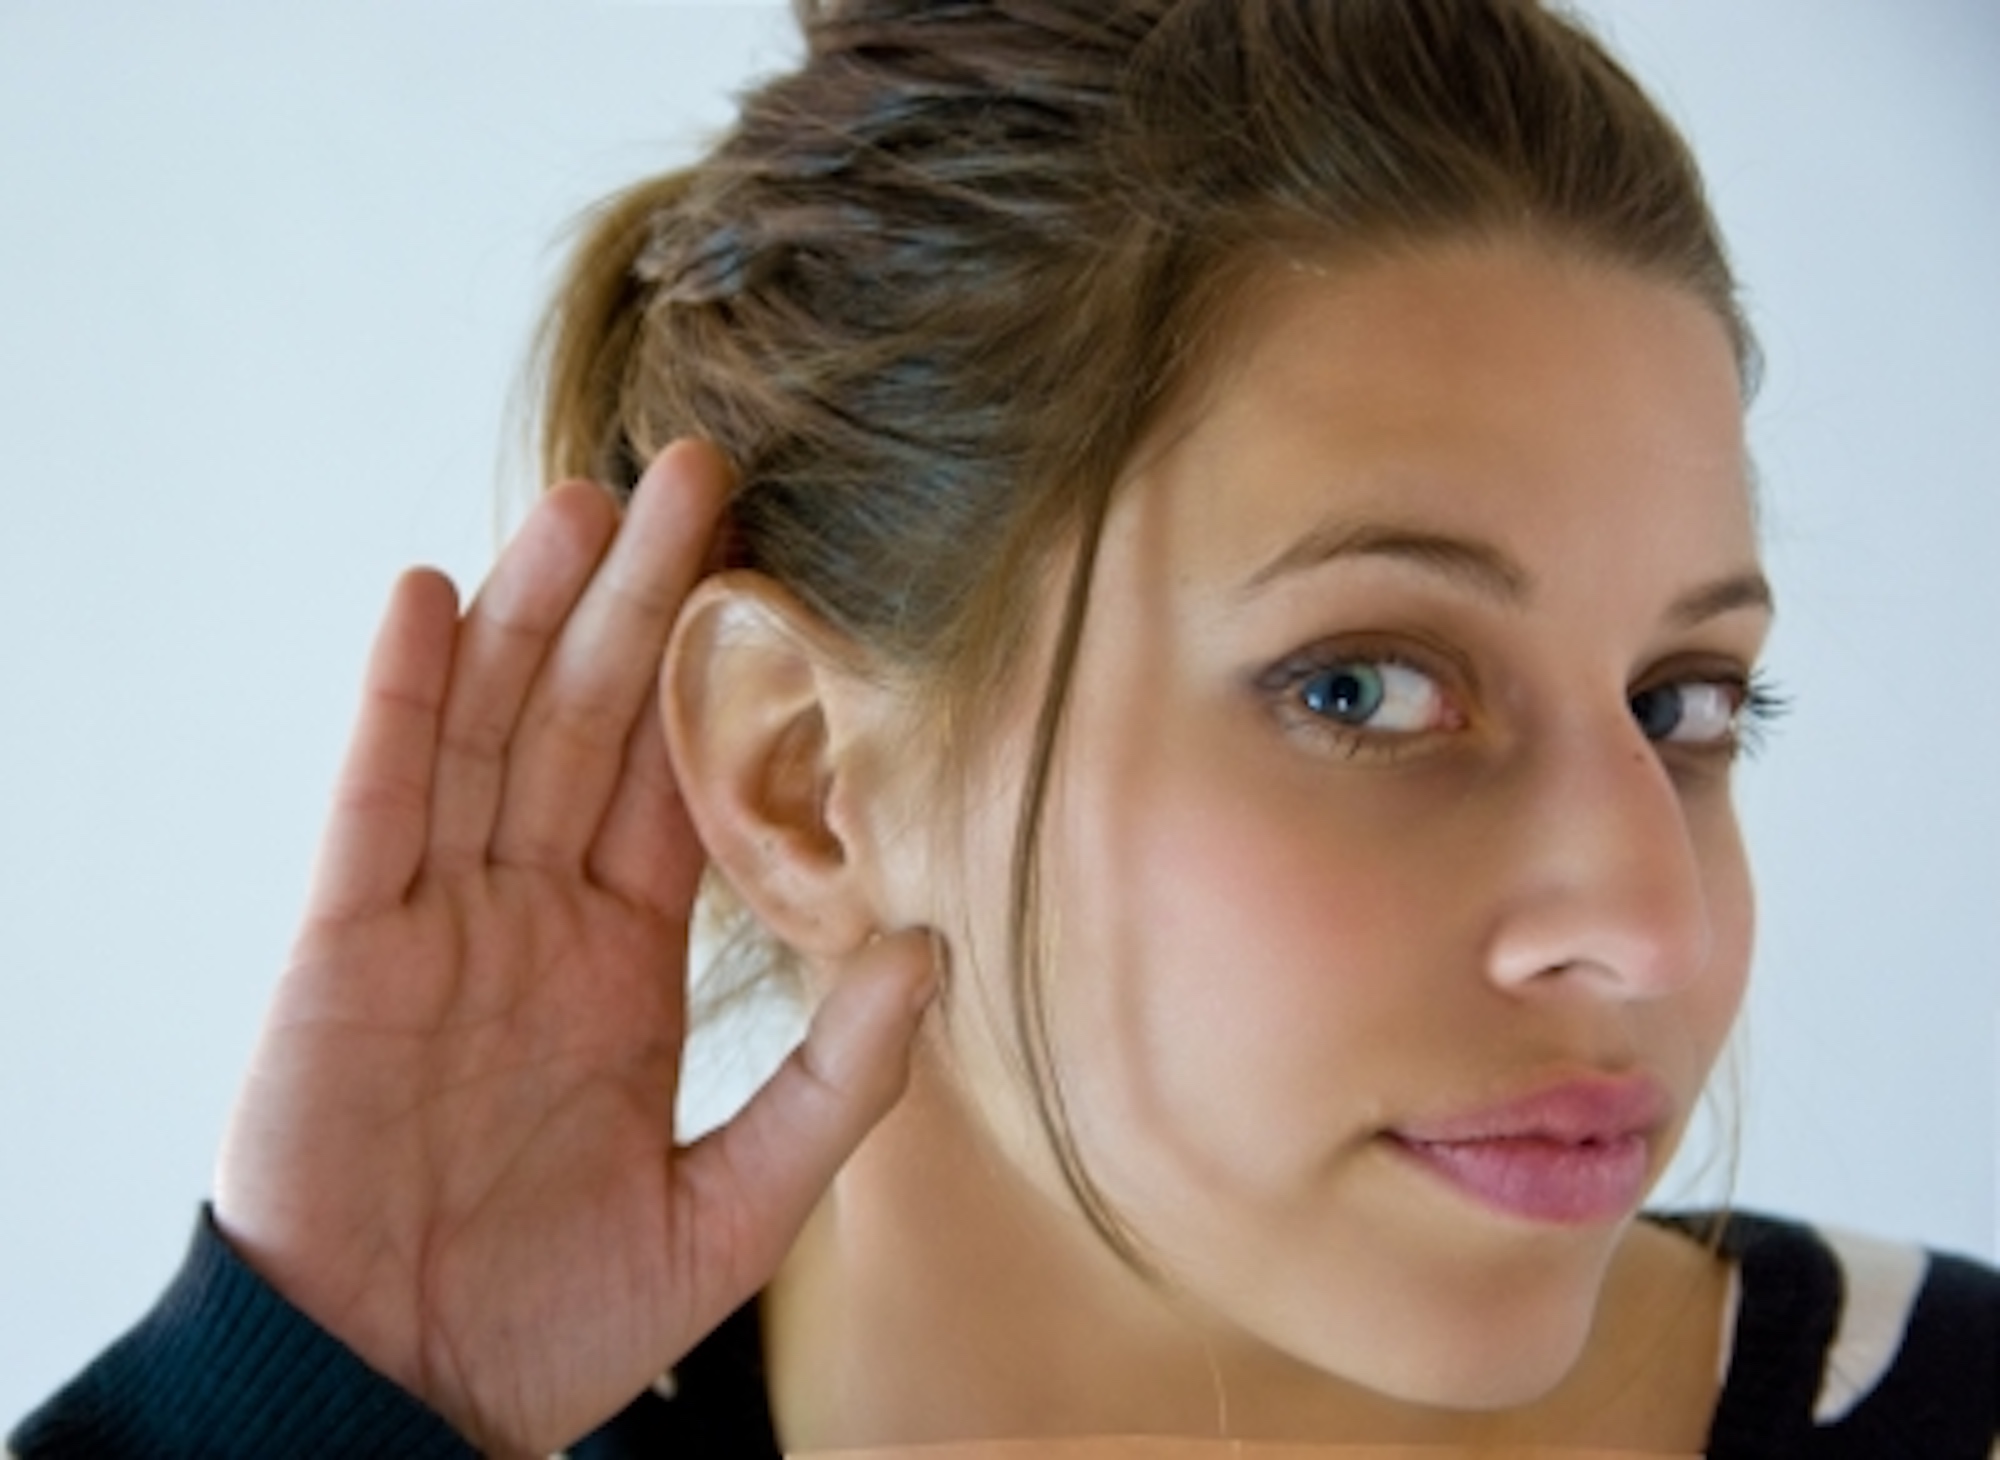 Al menos 130 medicamentos podrían causar daños irreversibles en la audición